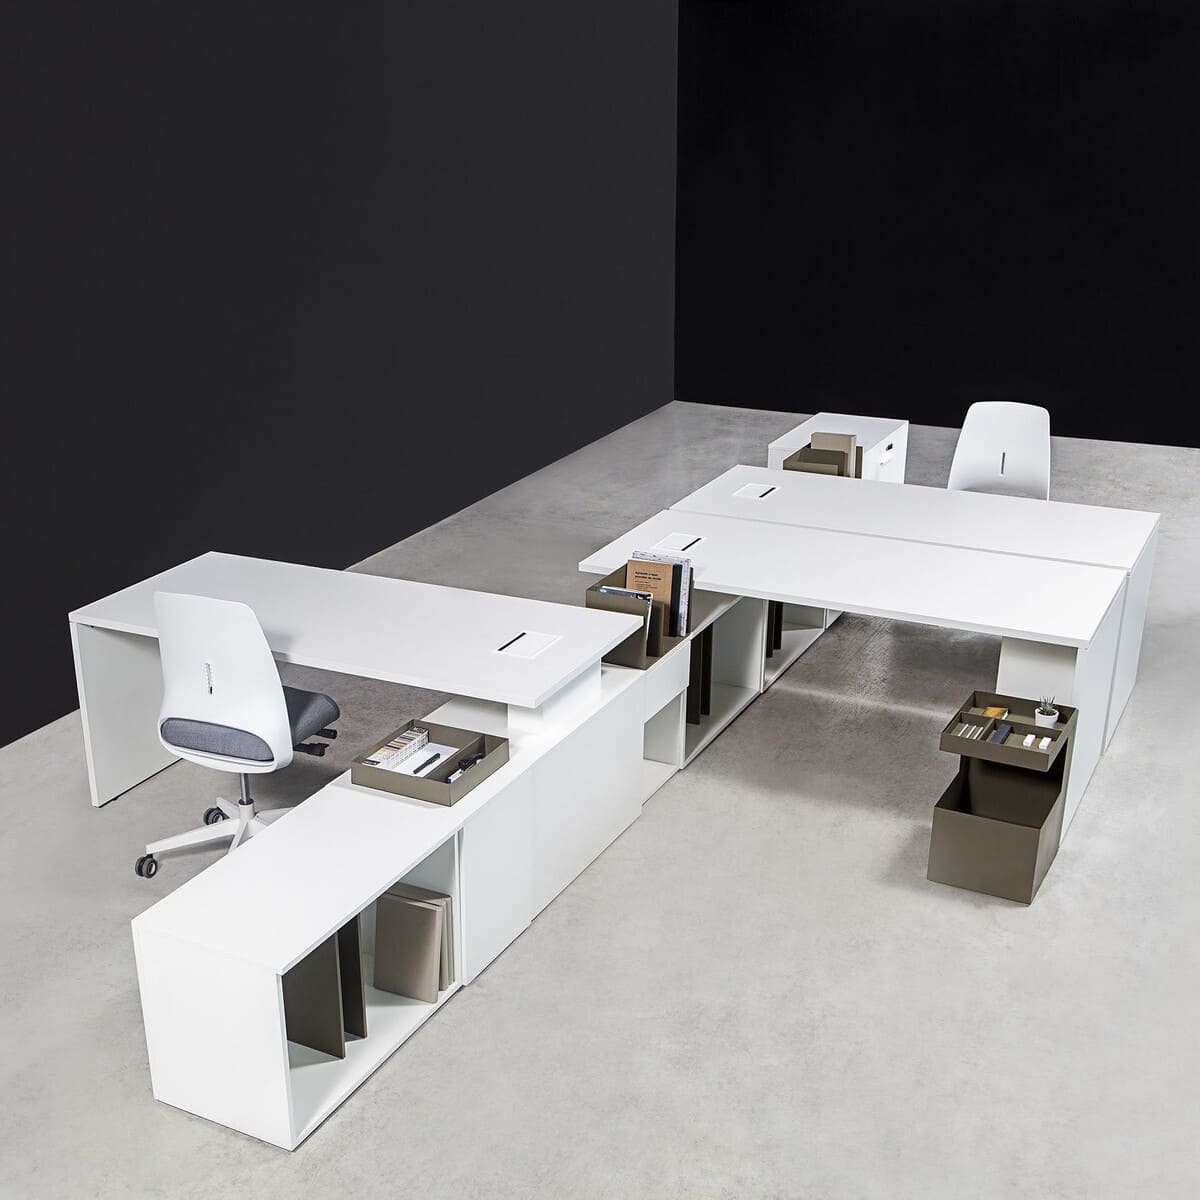 Bureau bench contemporain BAT OFFICE avec grande desserte porteuse blanche composée de tiroirs et de niches de rangement